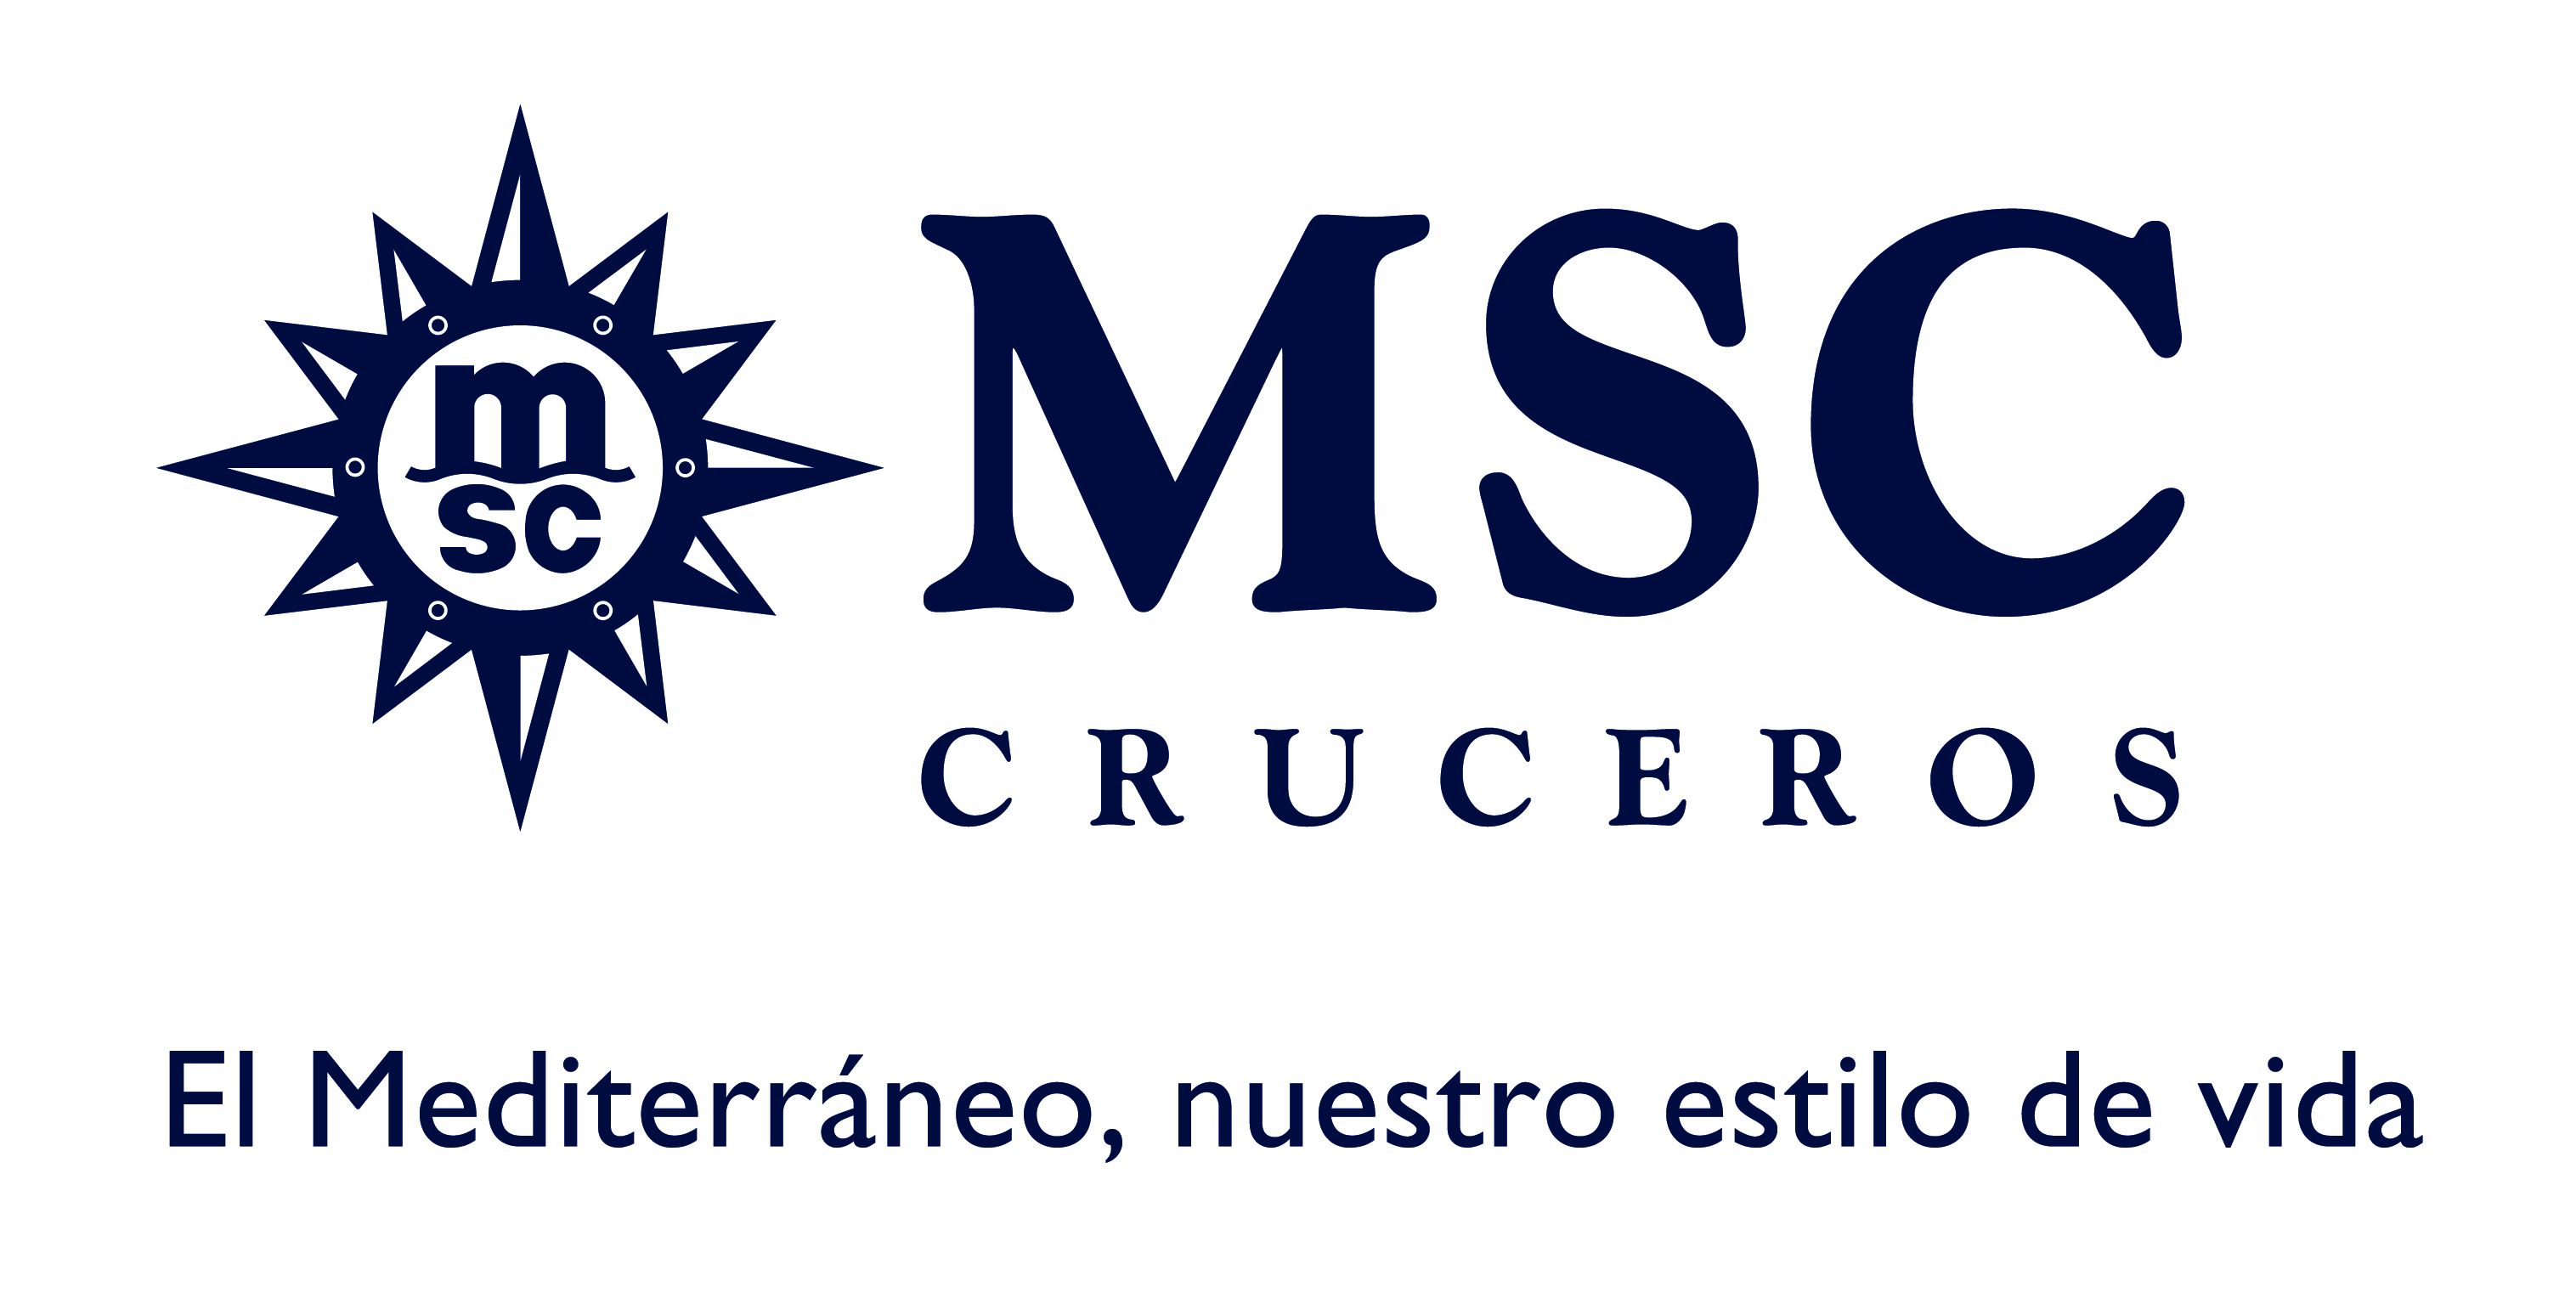 MSC CRUCEROS